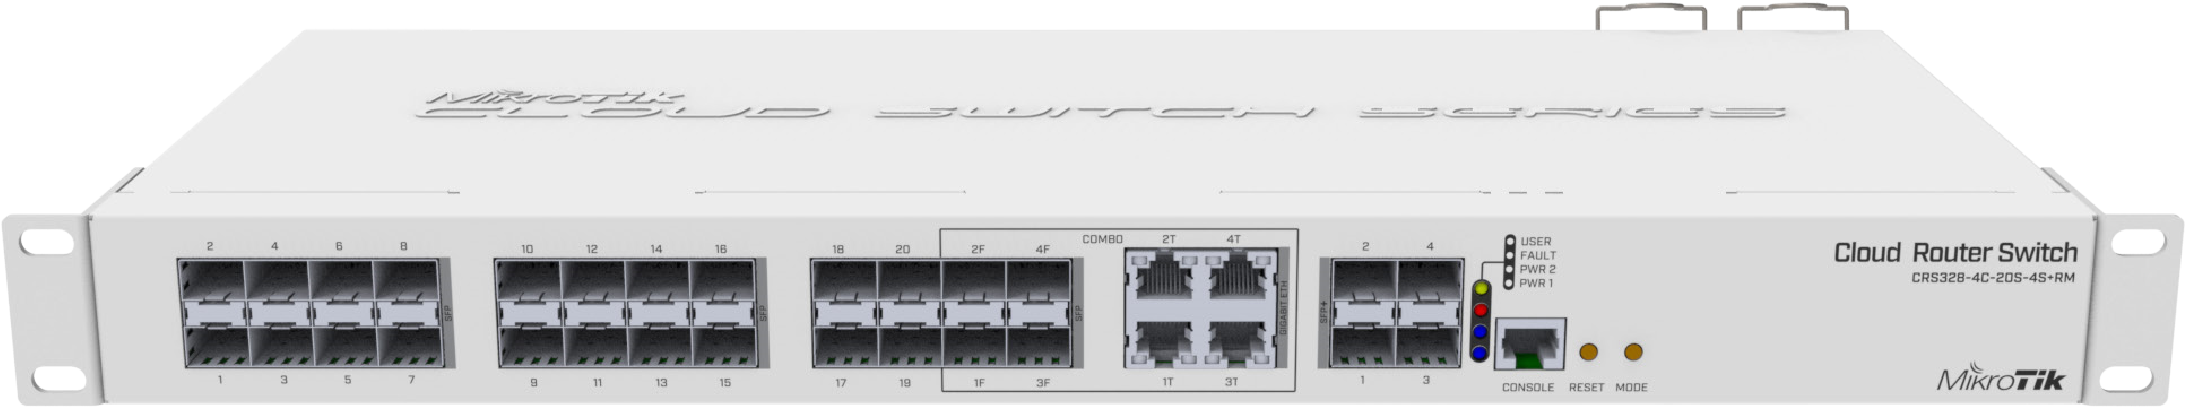 CRS328-4C-20S-4SplusRM Cloud Router Switch CRS328-4C-20S-4S+RM with RouterOS L5 20 PORT SFP 4 PORT SFP+